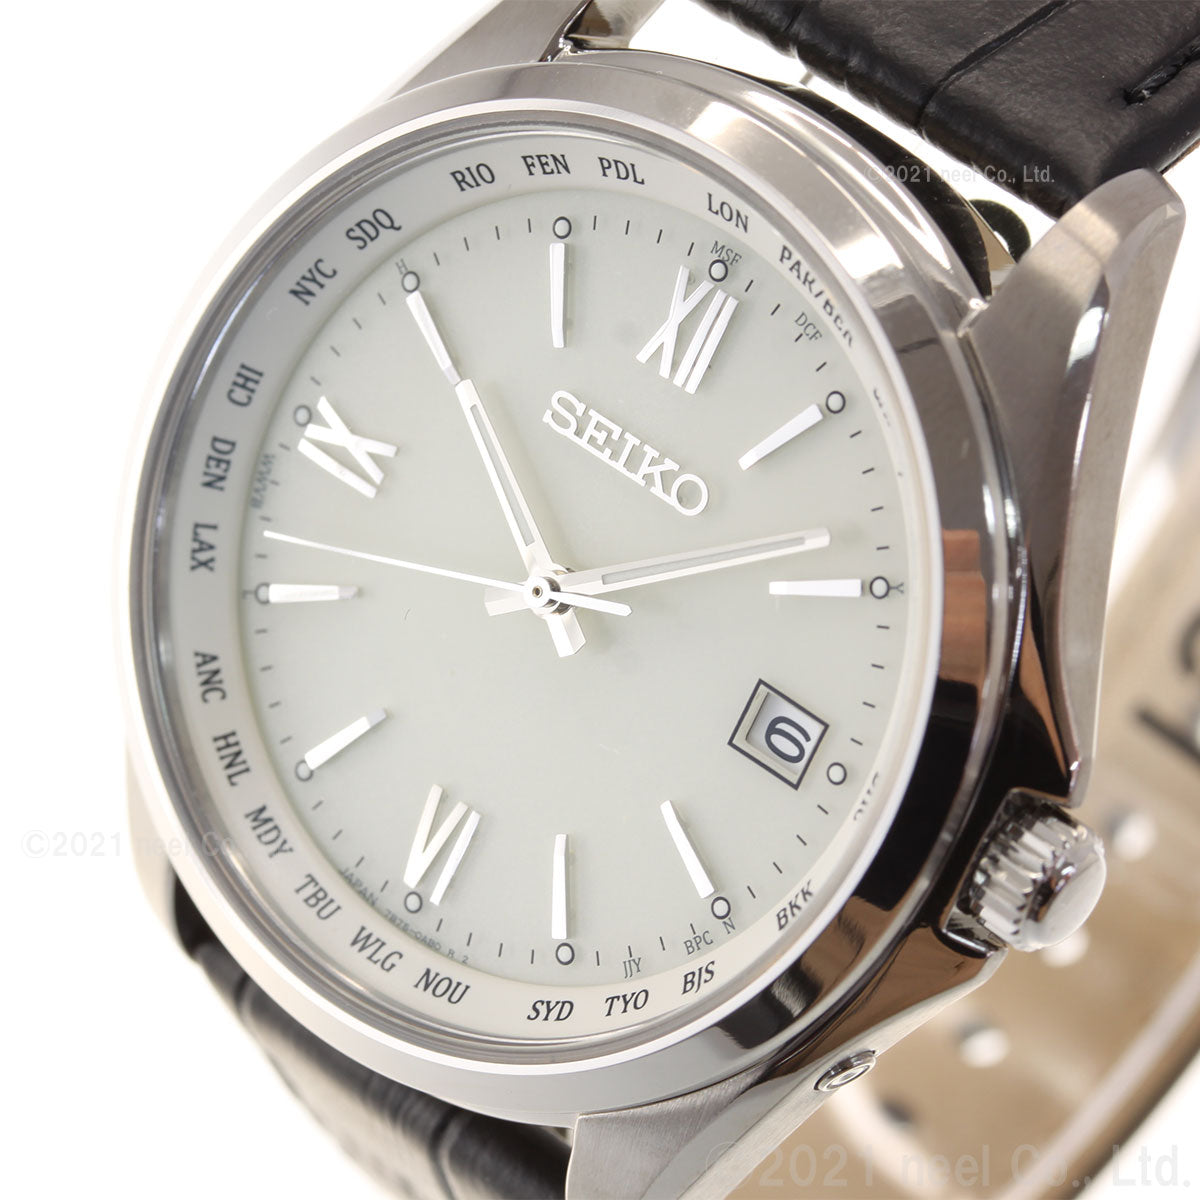 セイコー セレクション SEIKO SELECTION 電波 ソーラー 電波時計 腕時計 メンズ SBTM295